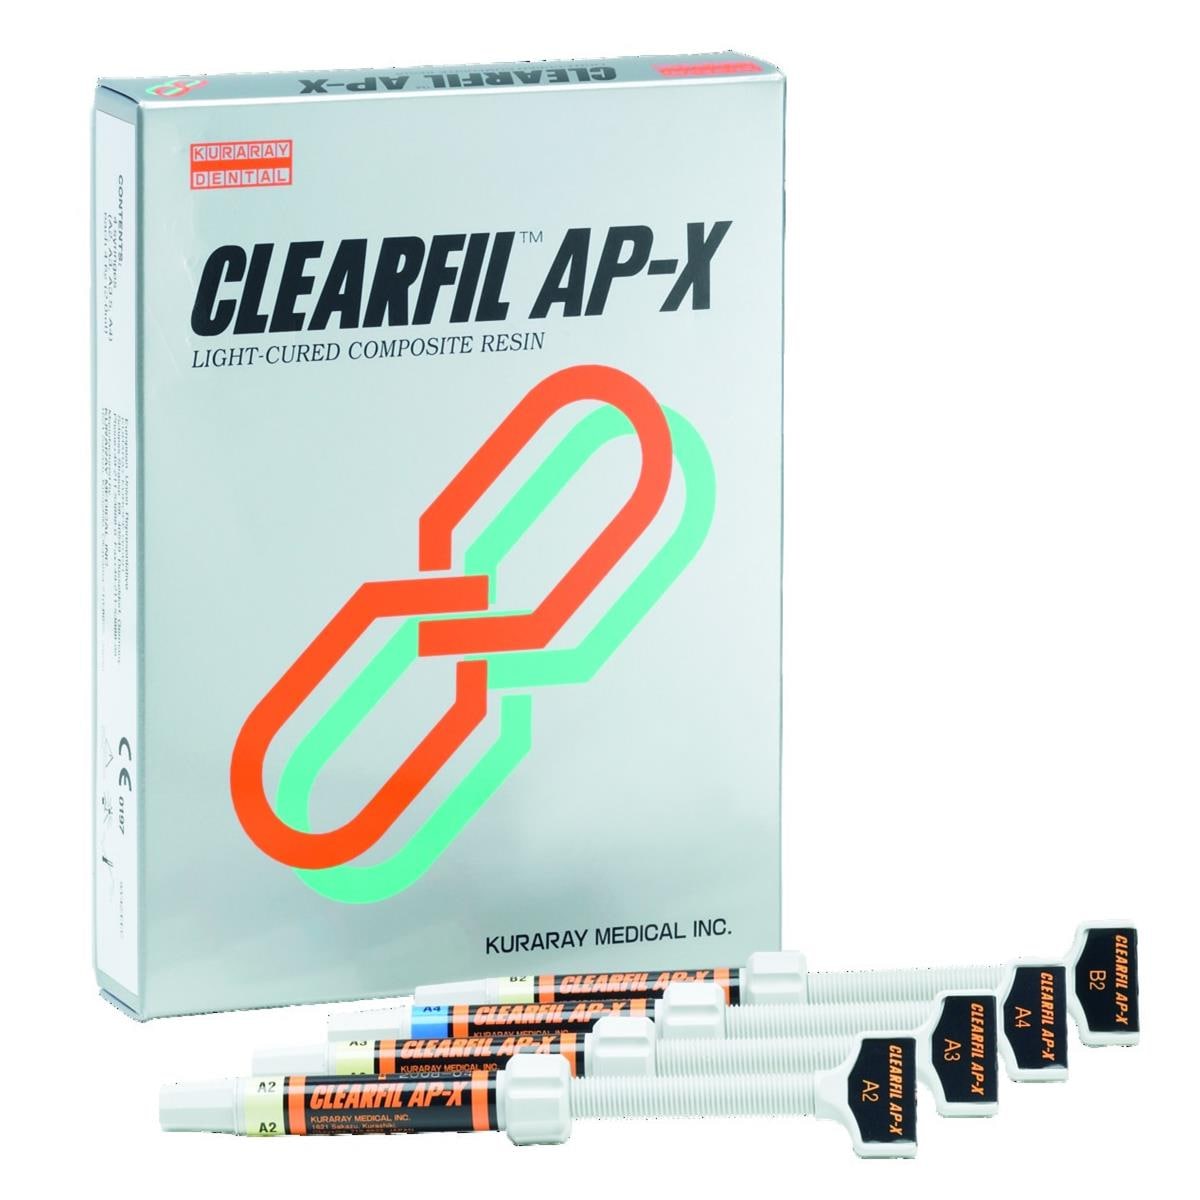 Clearfil AP-X KURARAY - C1 - Seringue de 4,6g